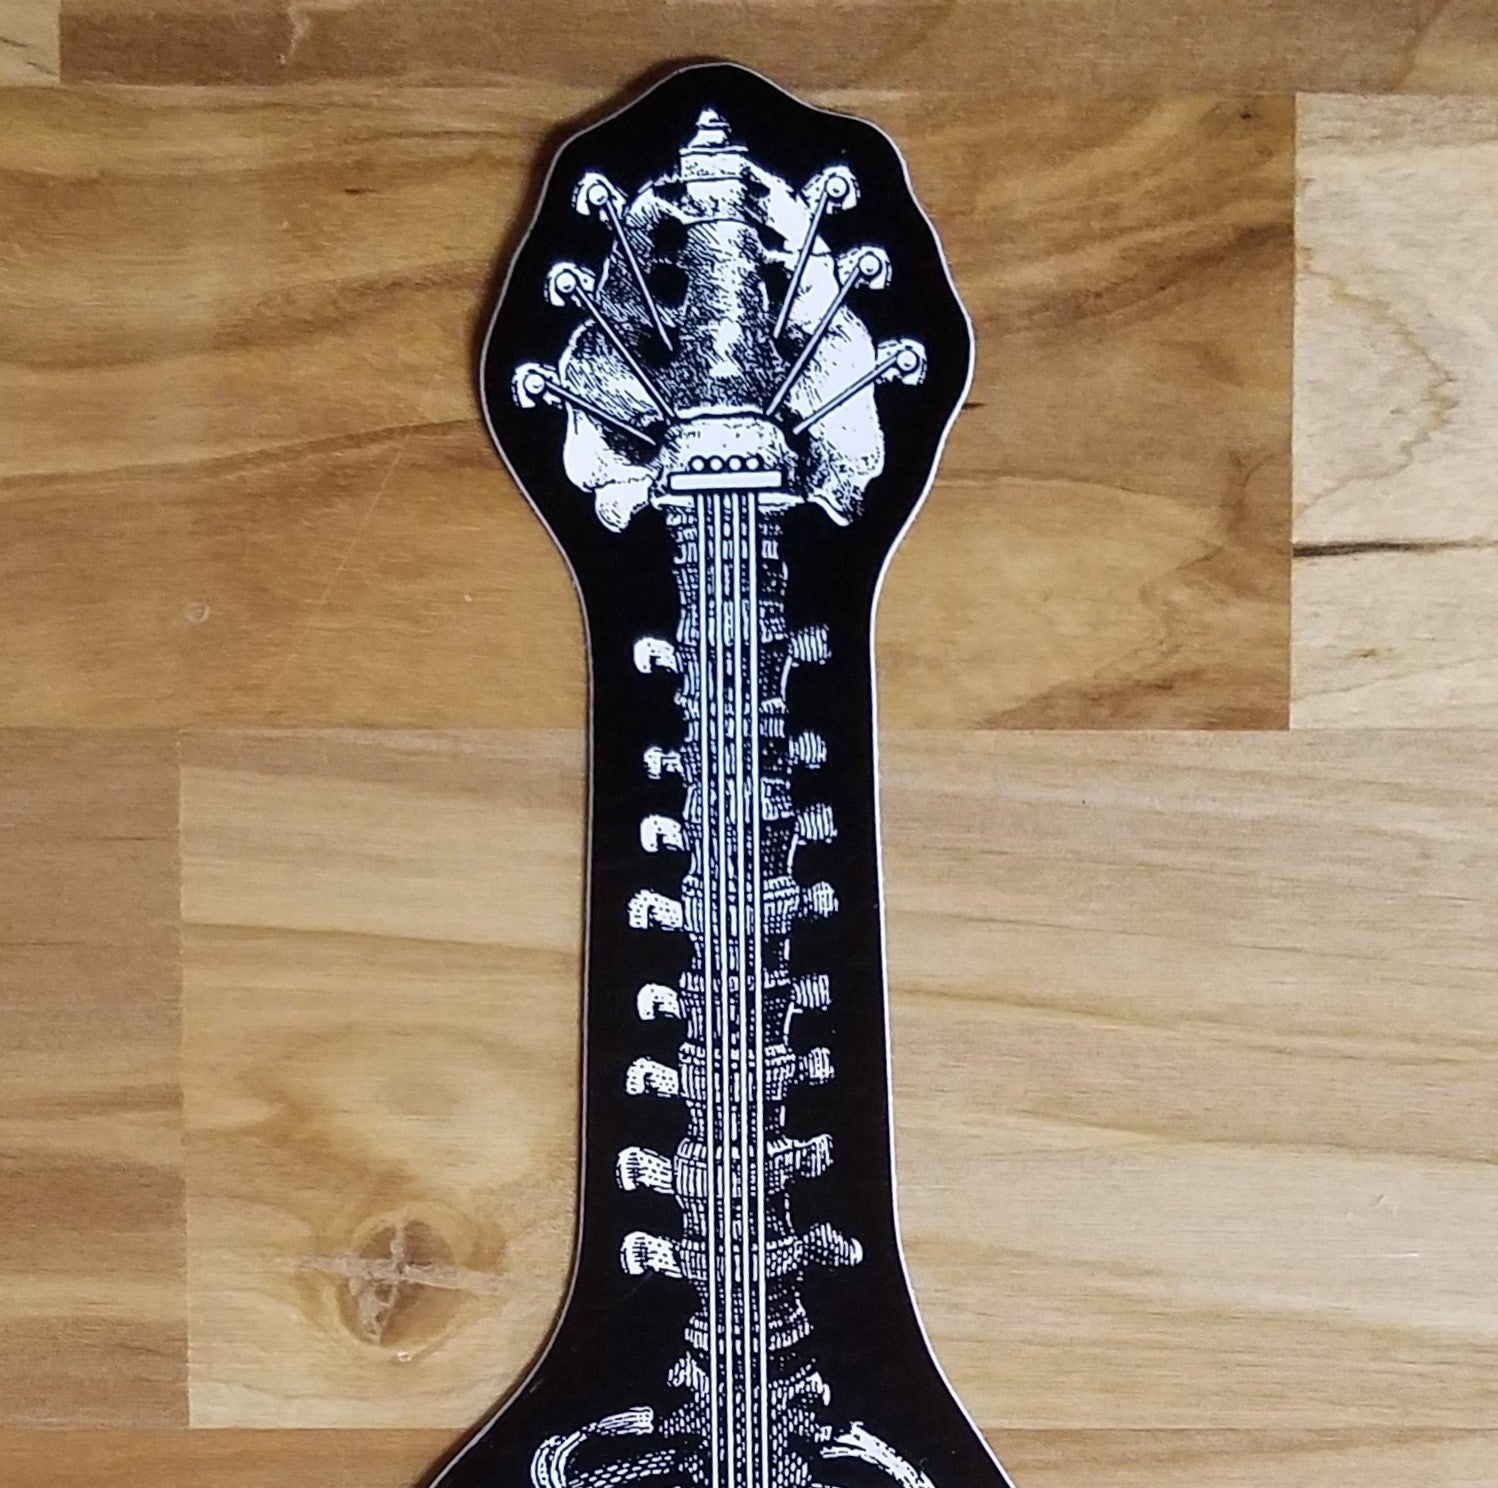 Emek 2.5x6" Bone Guitar Sticker - Set of 10